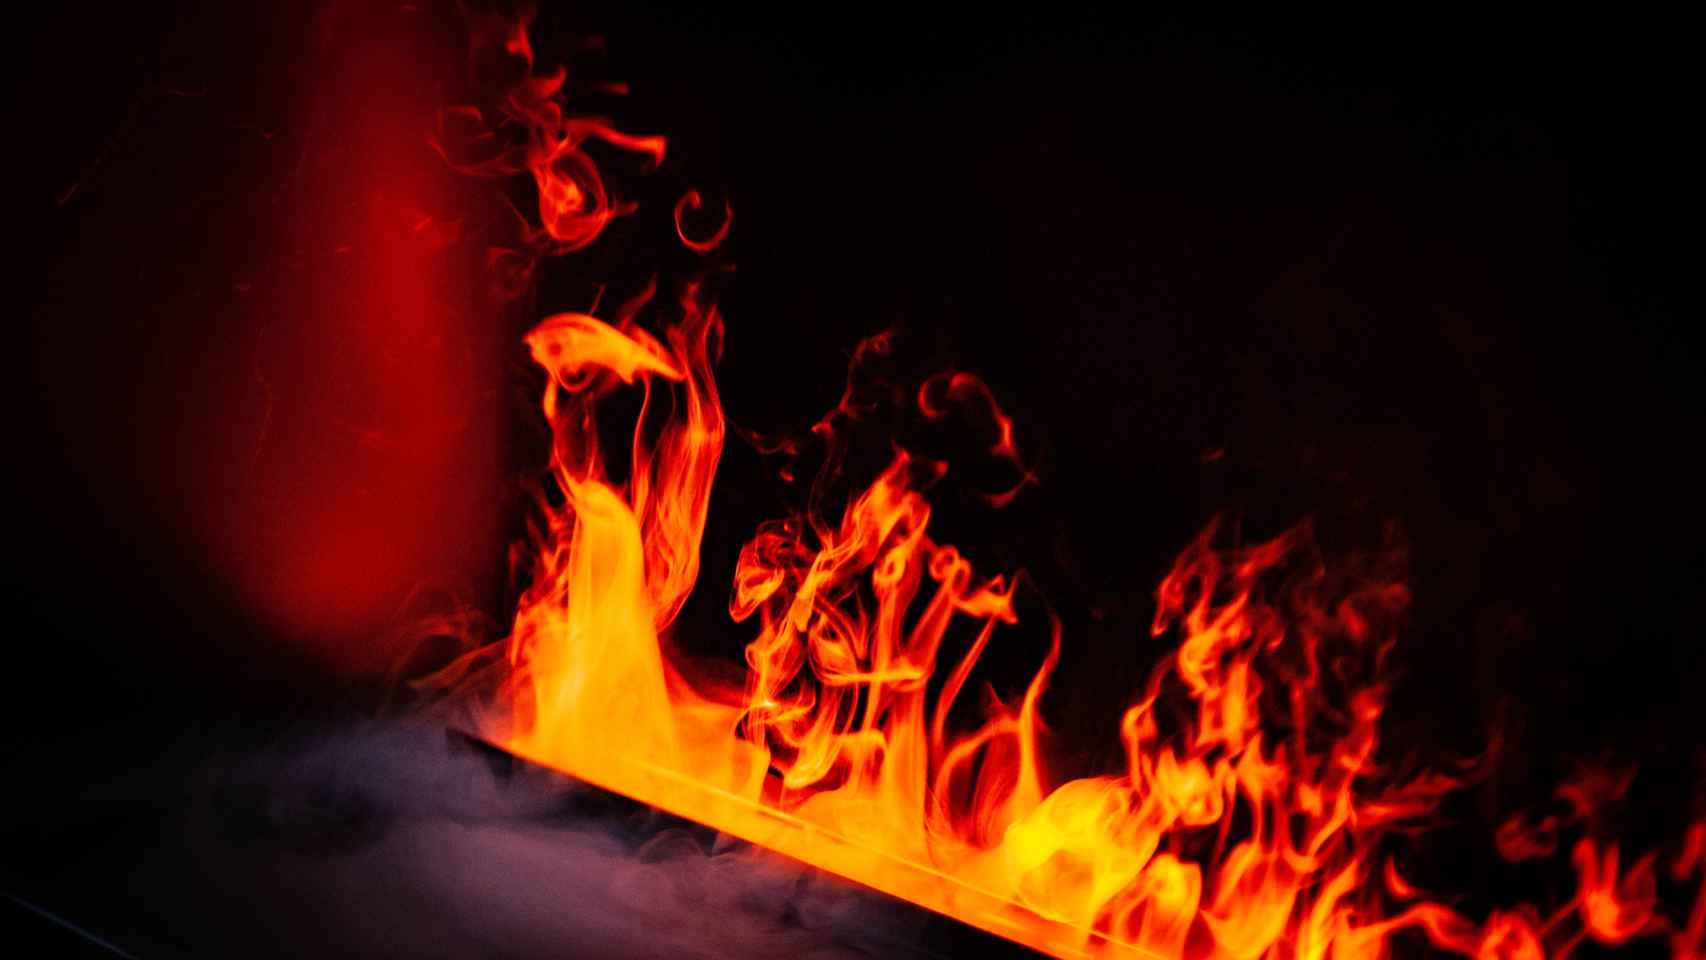 Además de chimeneas y cassettes, Artesanos del fuego vende estufas eléctricas que emulan el fuego.